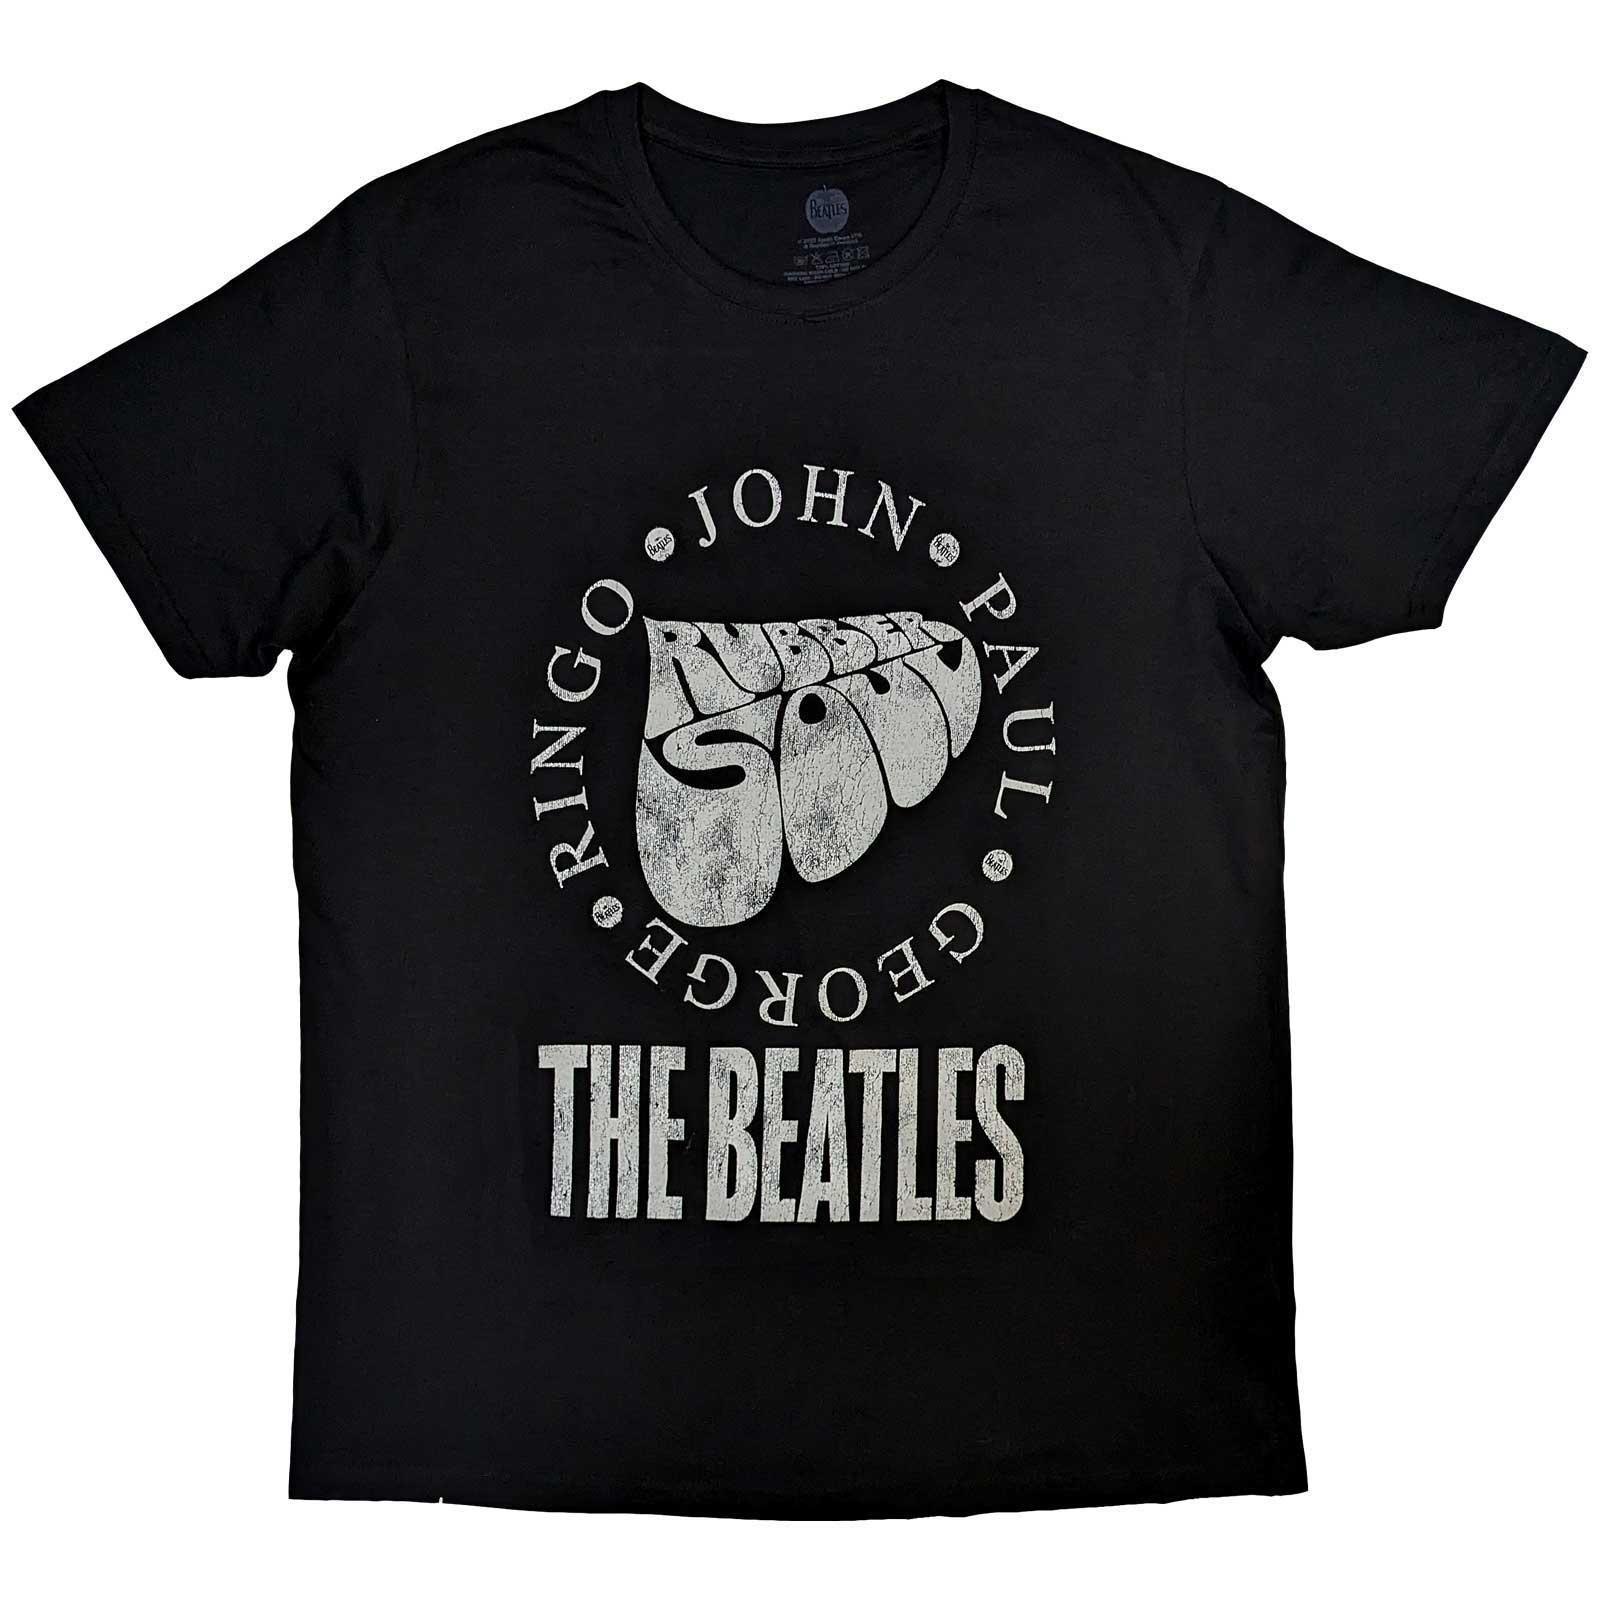 The Beatles Unisex Adult Rubber Soul Names Cotton T-Shirt (Black) (L)